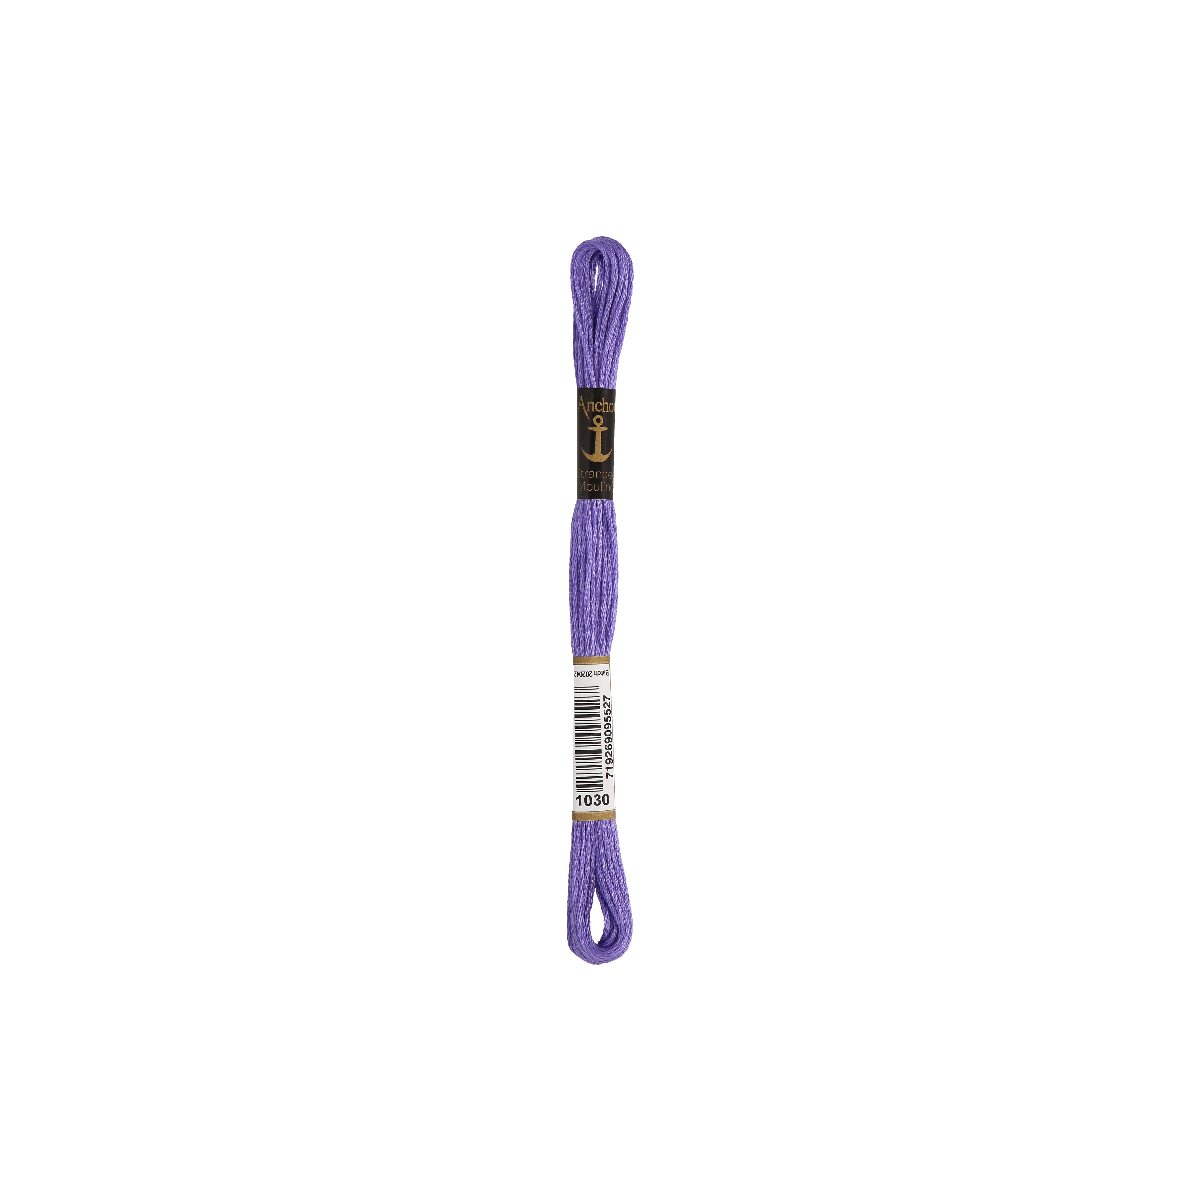 Anchor Torsade 8m, violet moyen, coton, couleur 1030, 6 fils